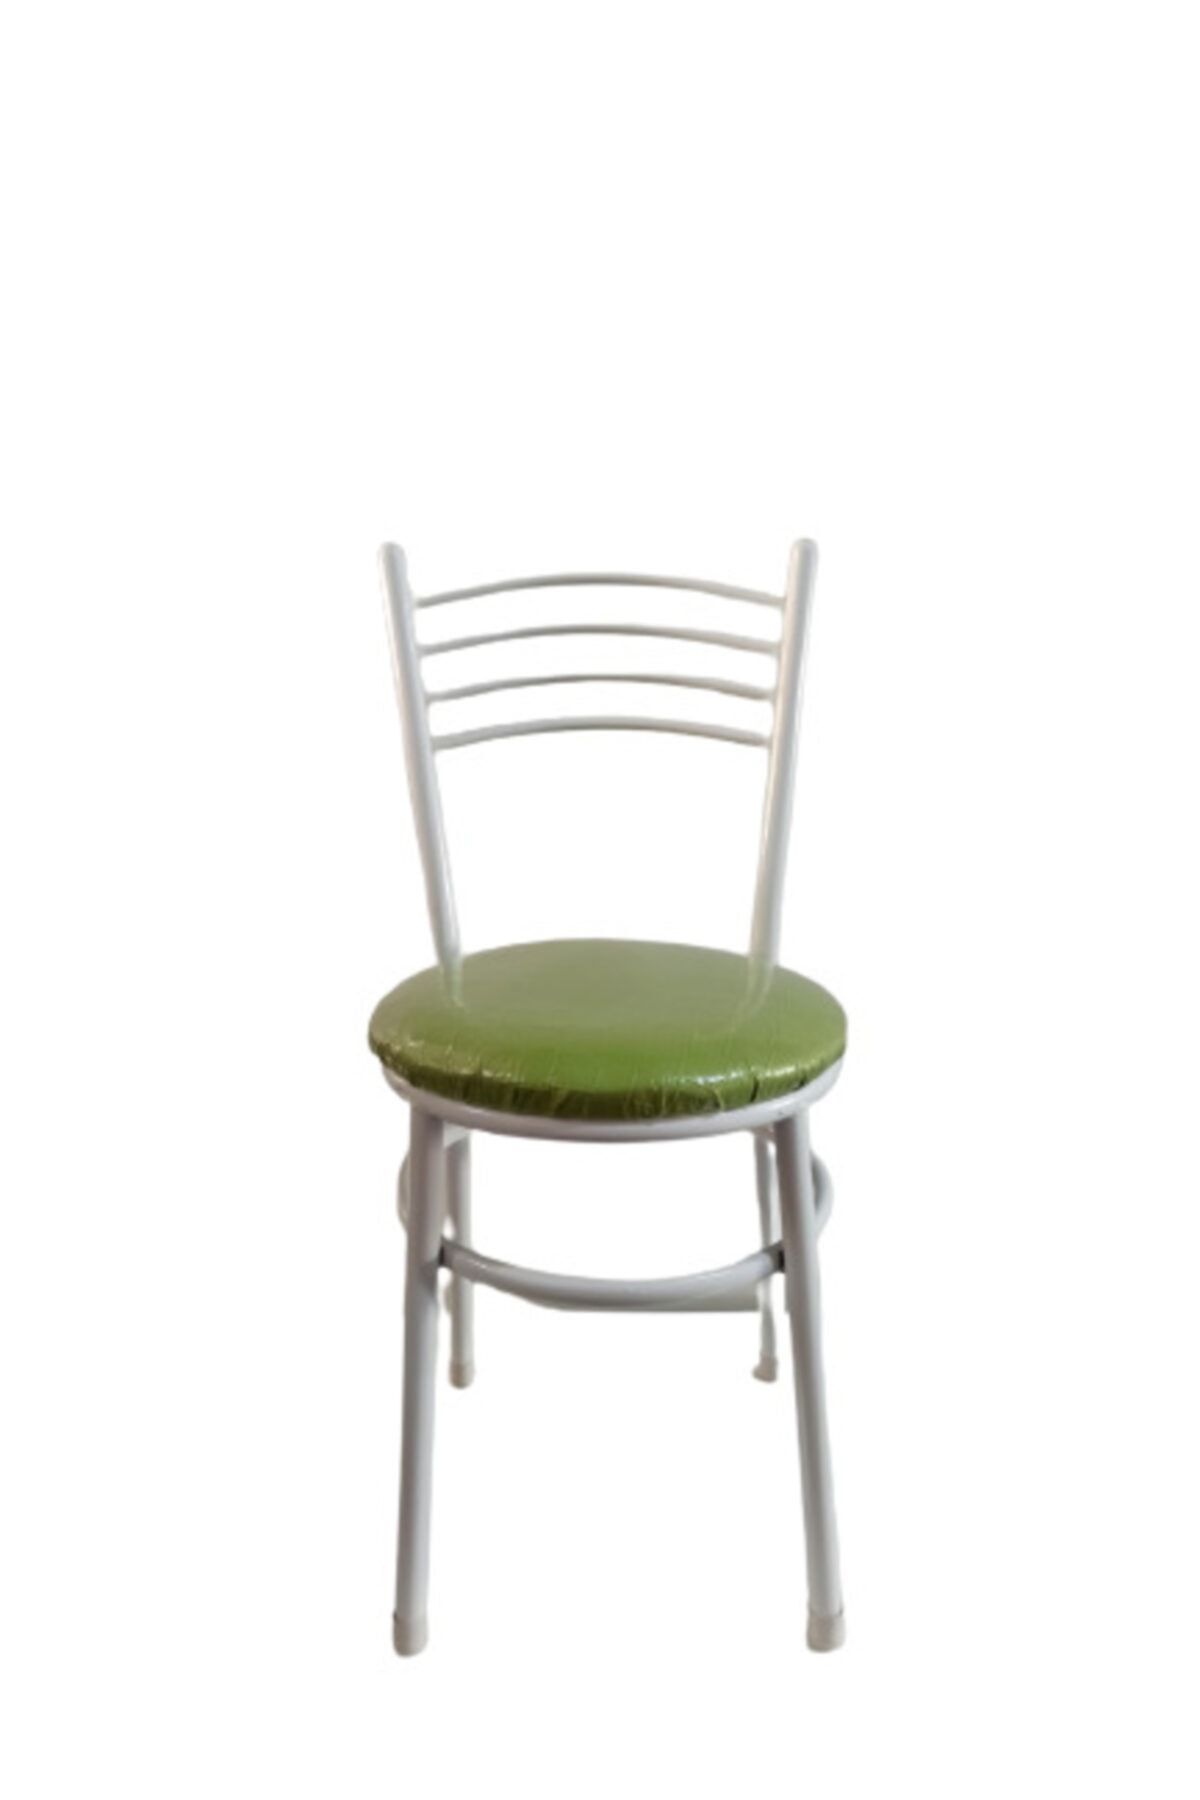 yılmaz masacılık Tatlı 6 Adet Yeşil Mutfak Bahçe Sandalyesi